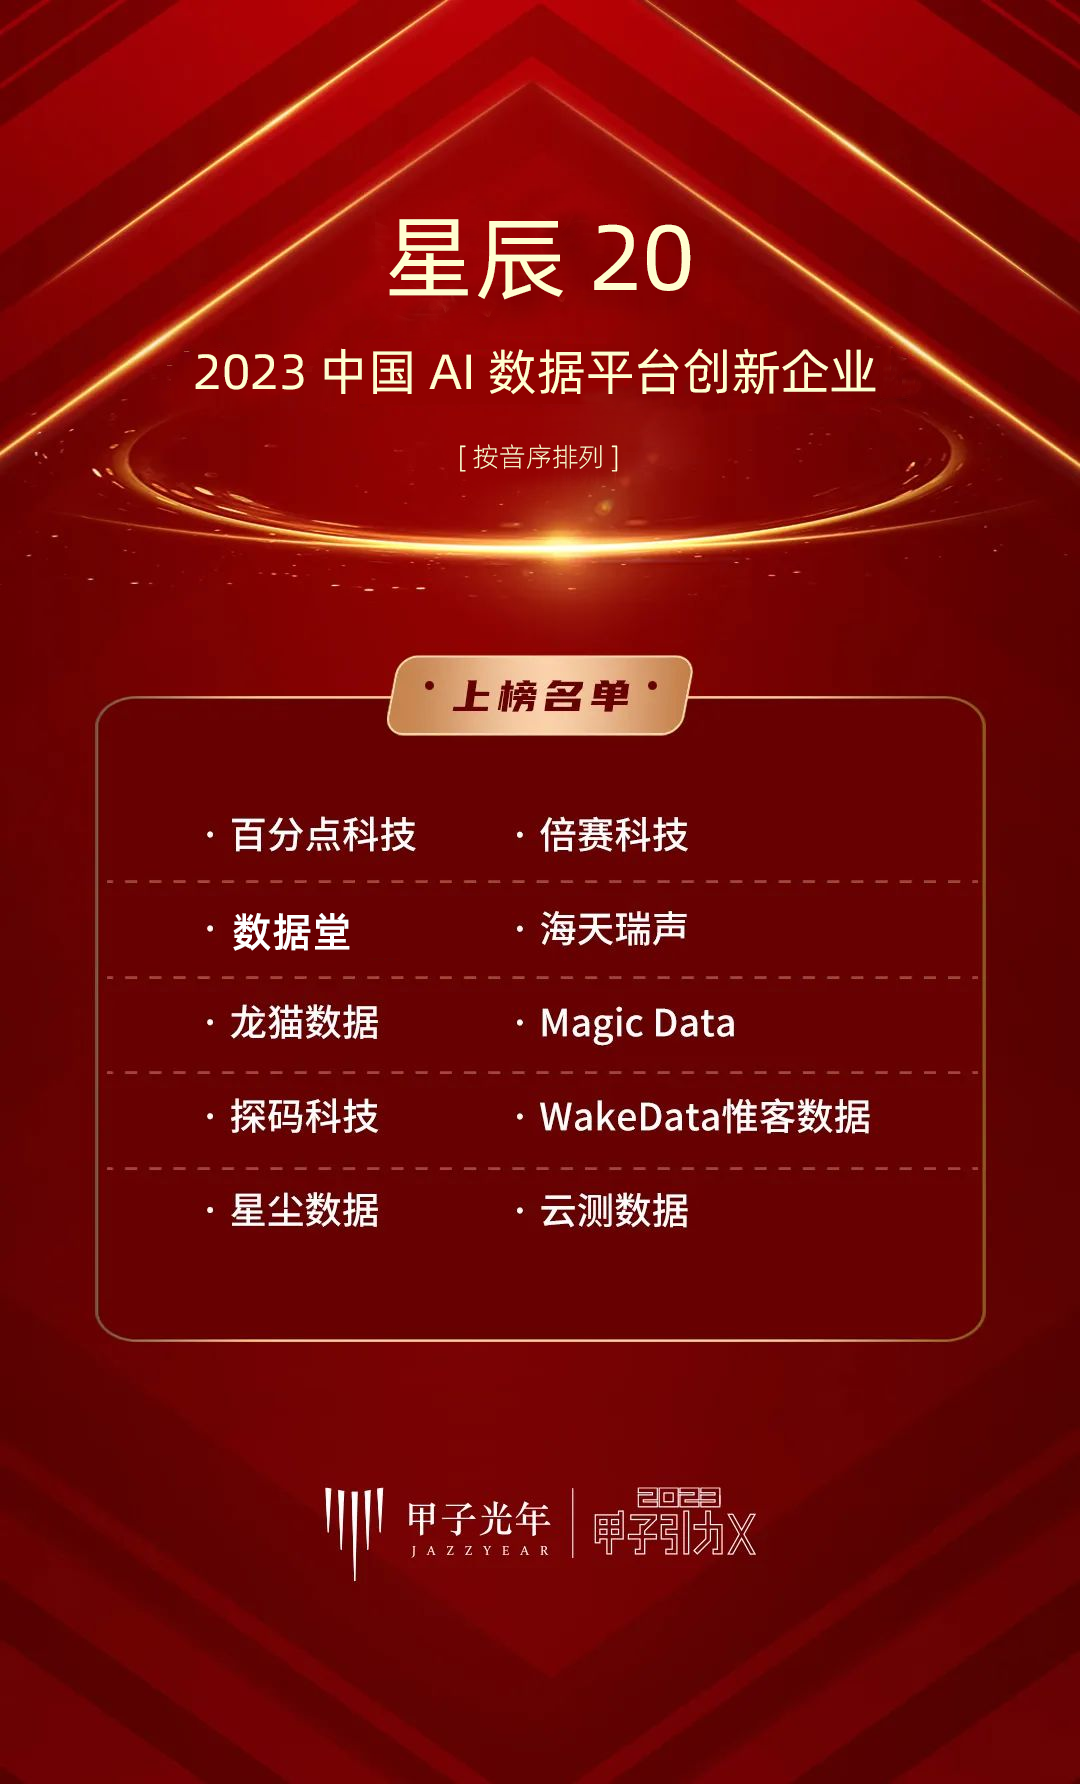 数据堂荣登甲子光年“星辰20”榜单：2023中国AI数据平台创新企业